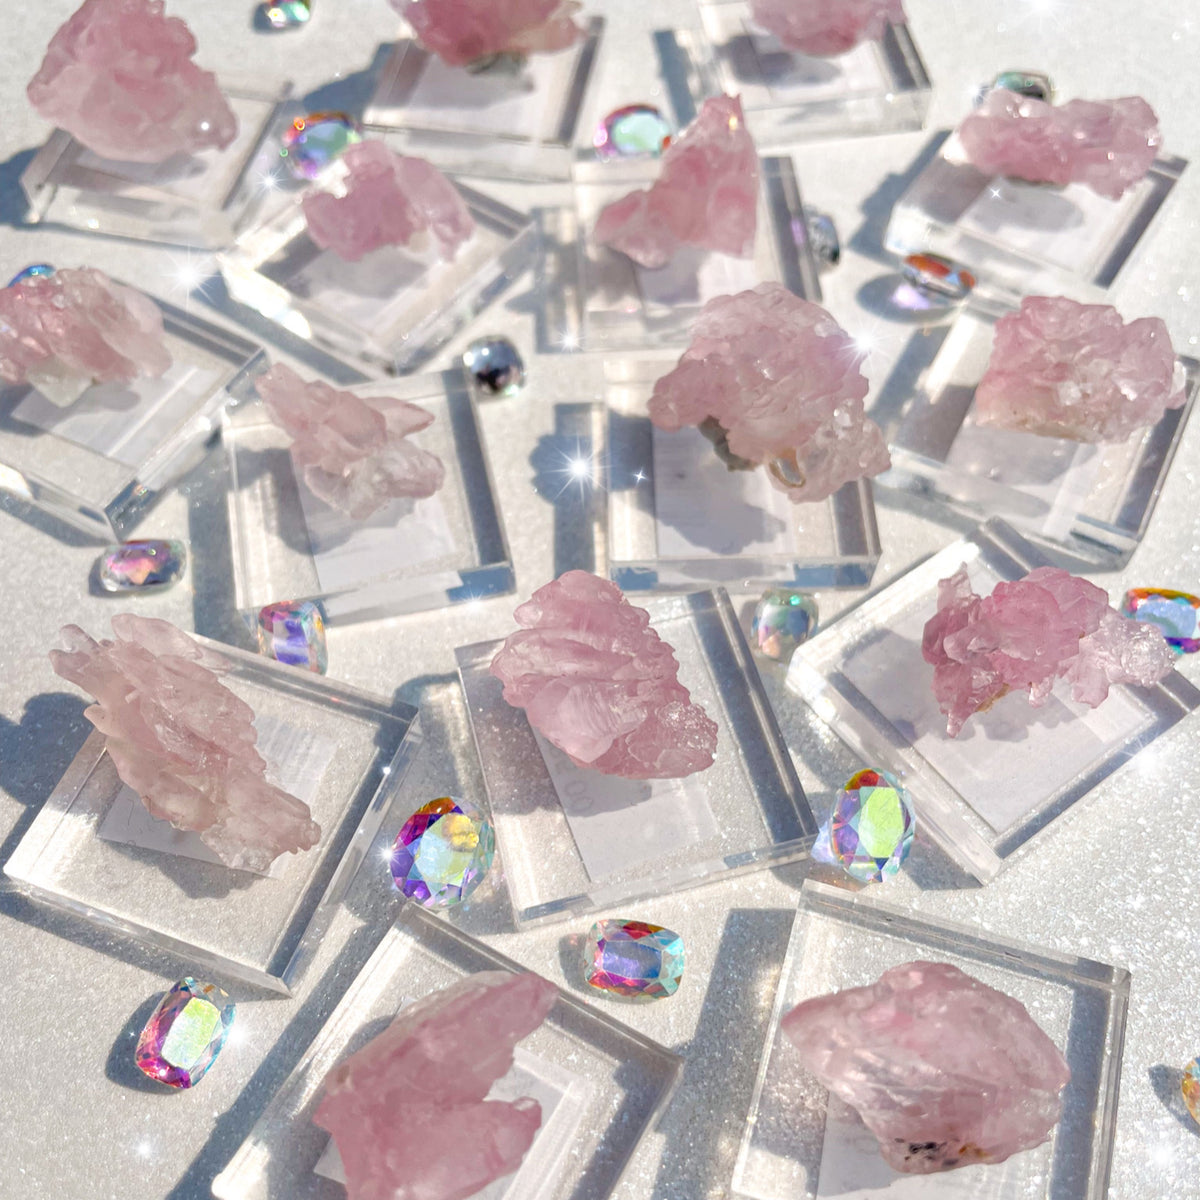 Crystallized Rose Quartz (Pink Quartz)